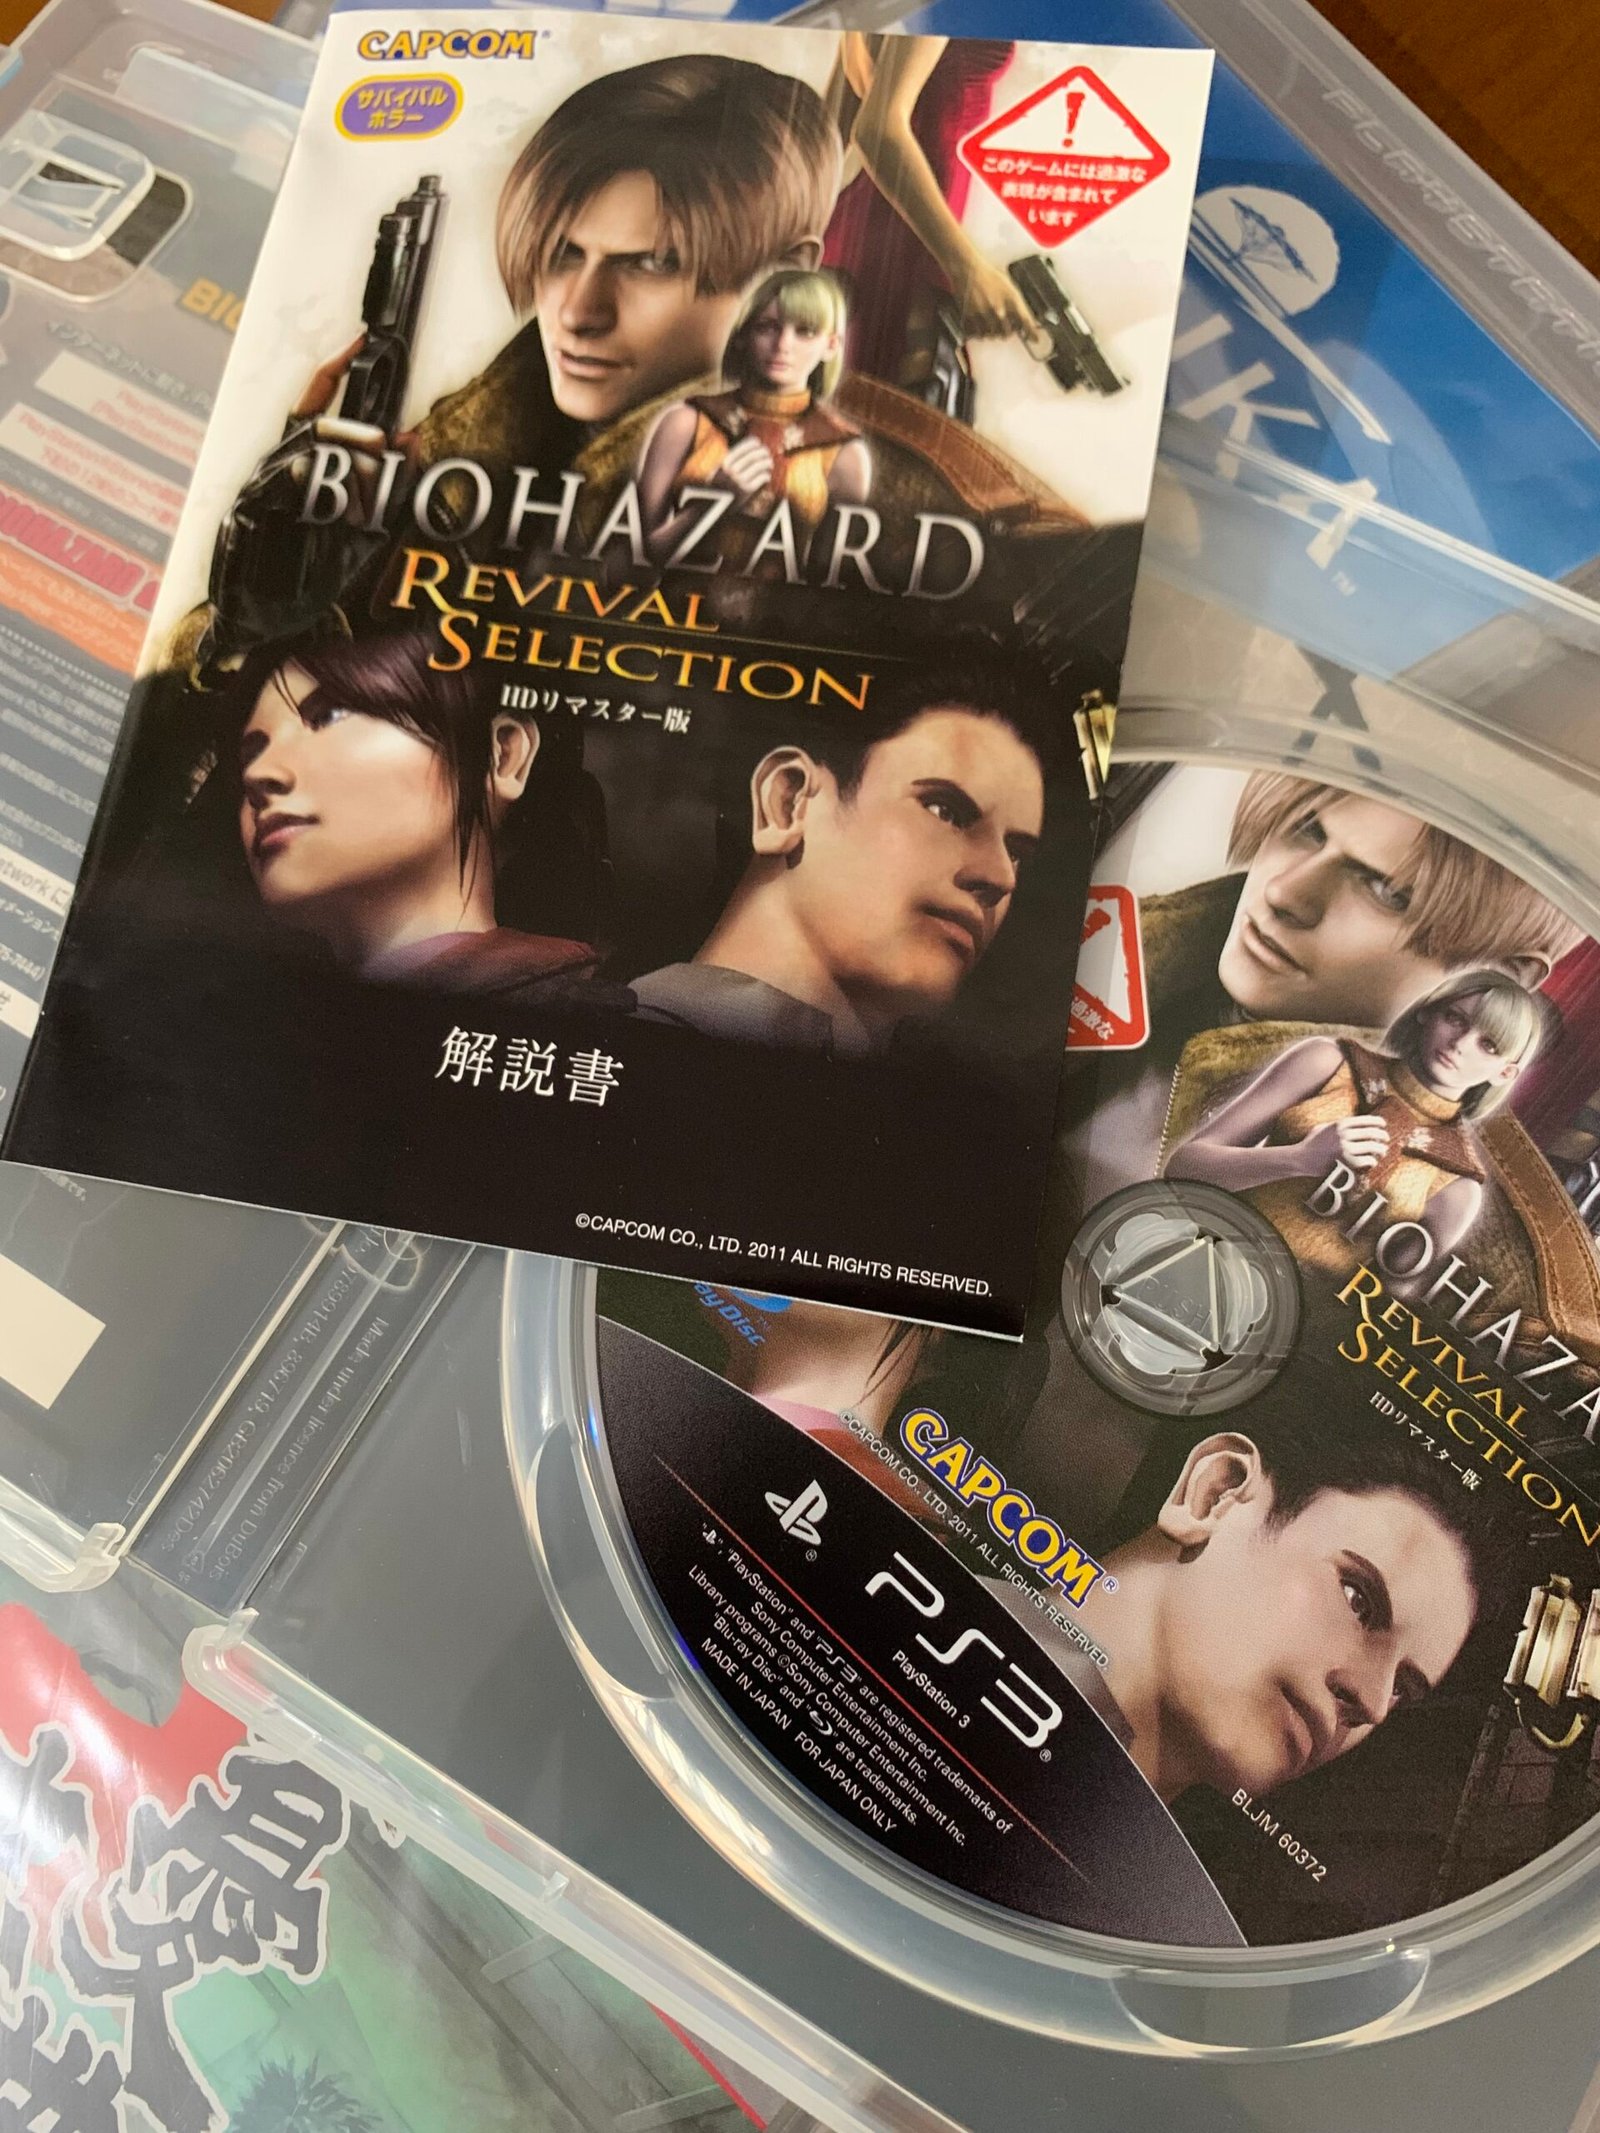 Biohazard revival Selection - Jogo para Playstation 3 - Ifgames